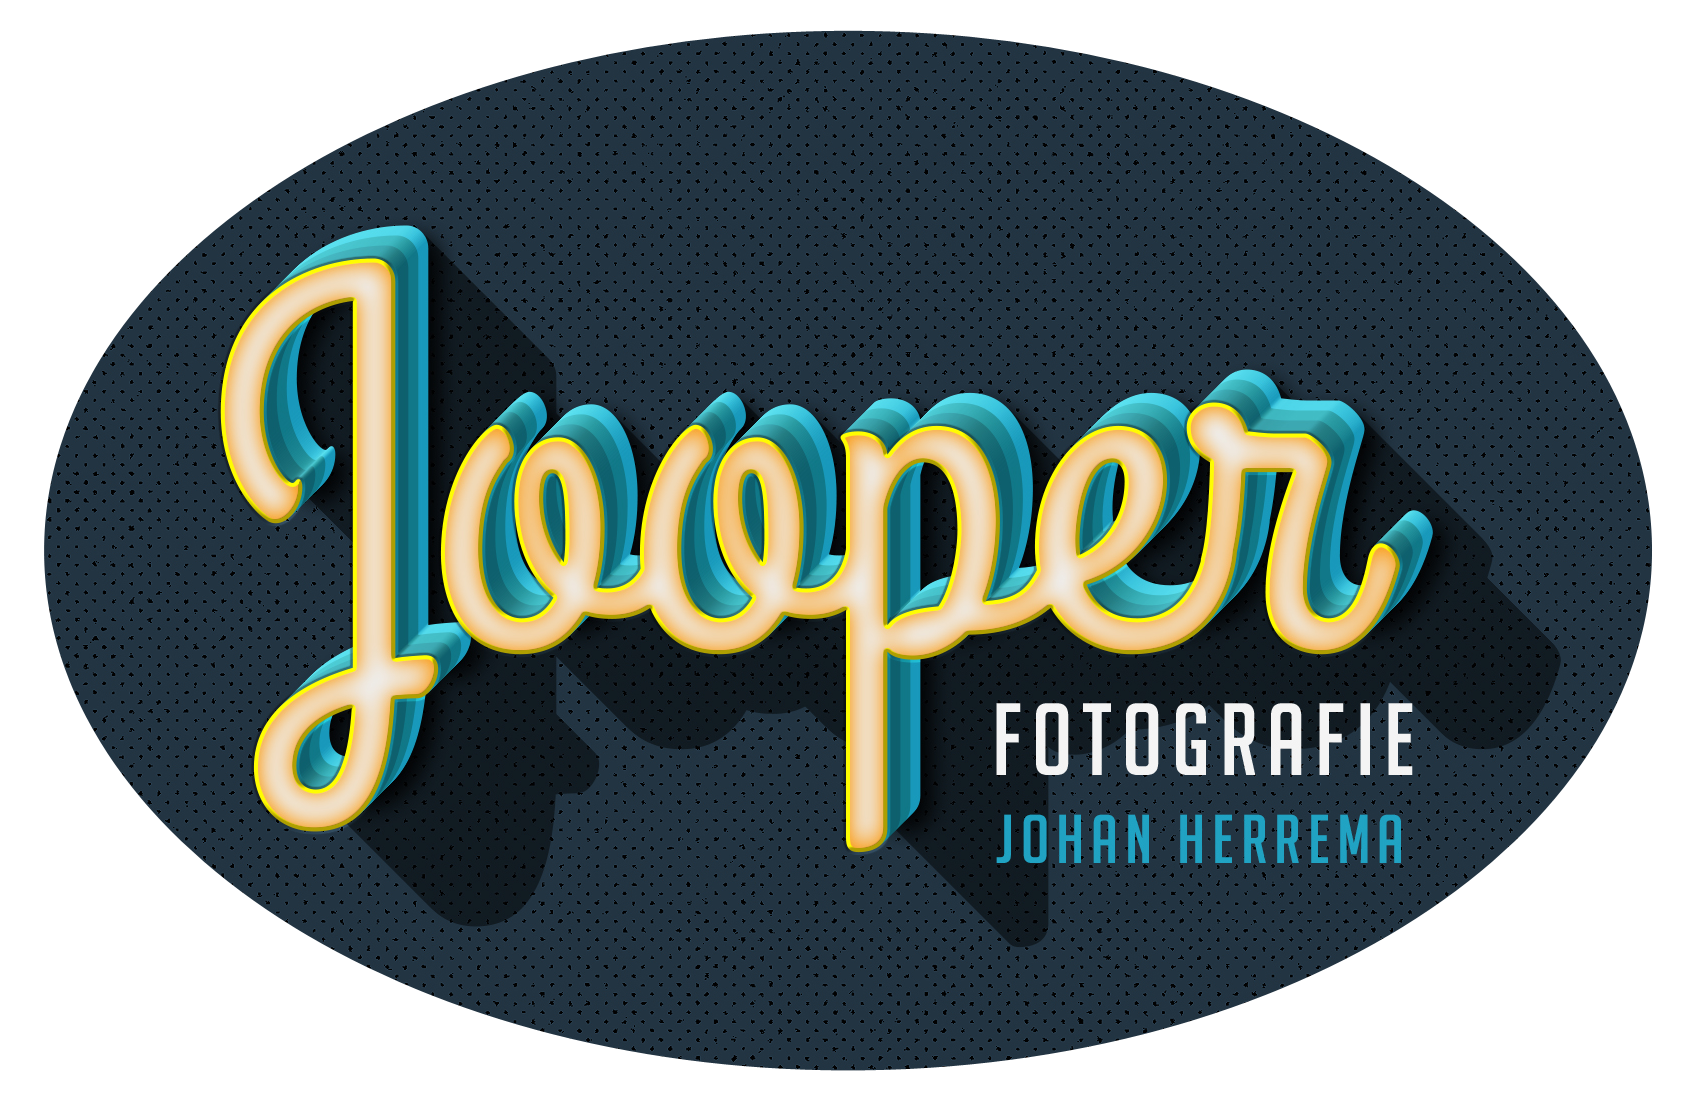 (c) Jooper.nl